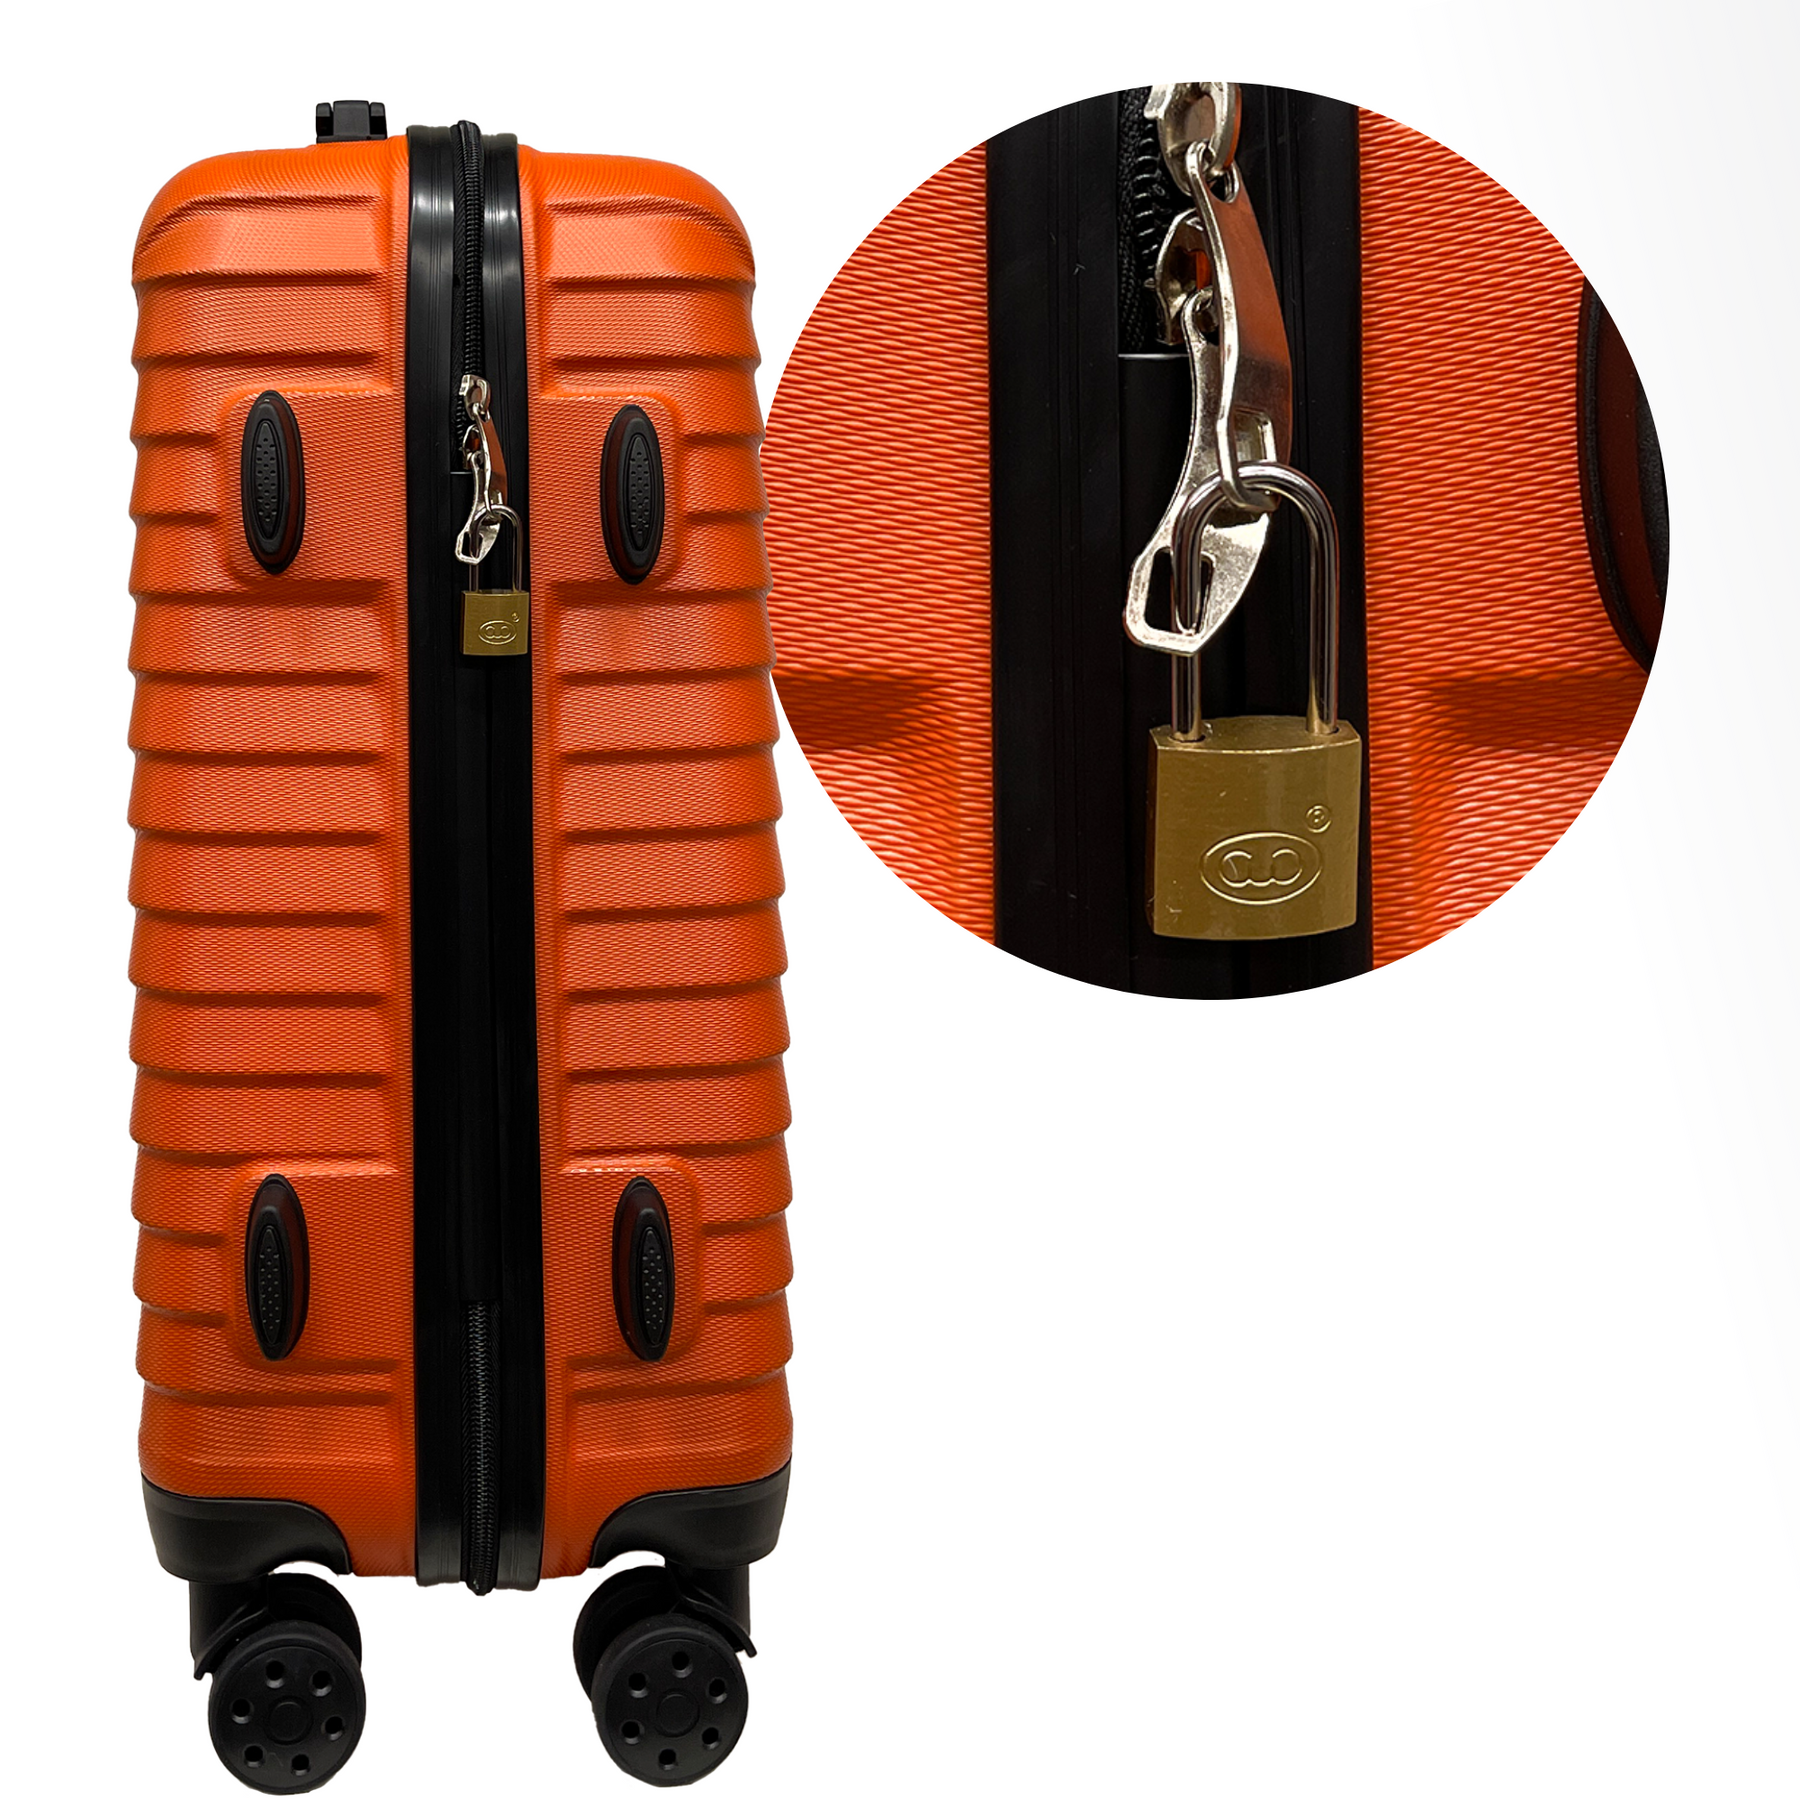 Zámek s 20mm dlouhým hřebem a 2 klíči - Bezpečnost pro kufr, zavazadla, cestovní tašku a batohy